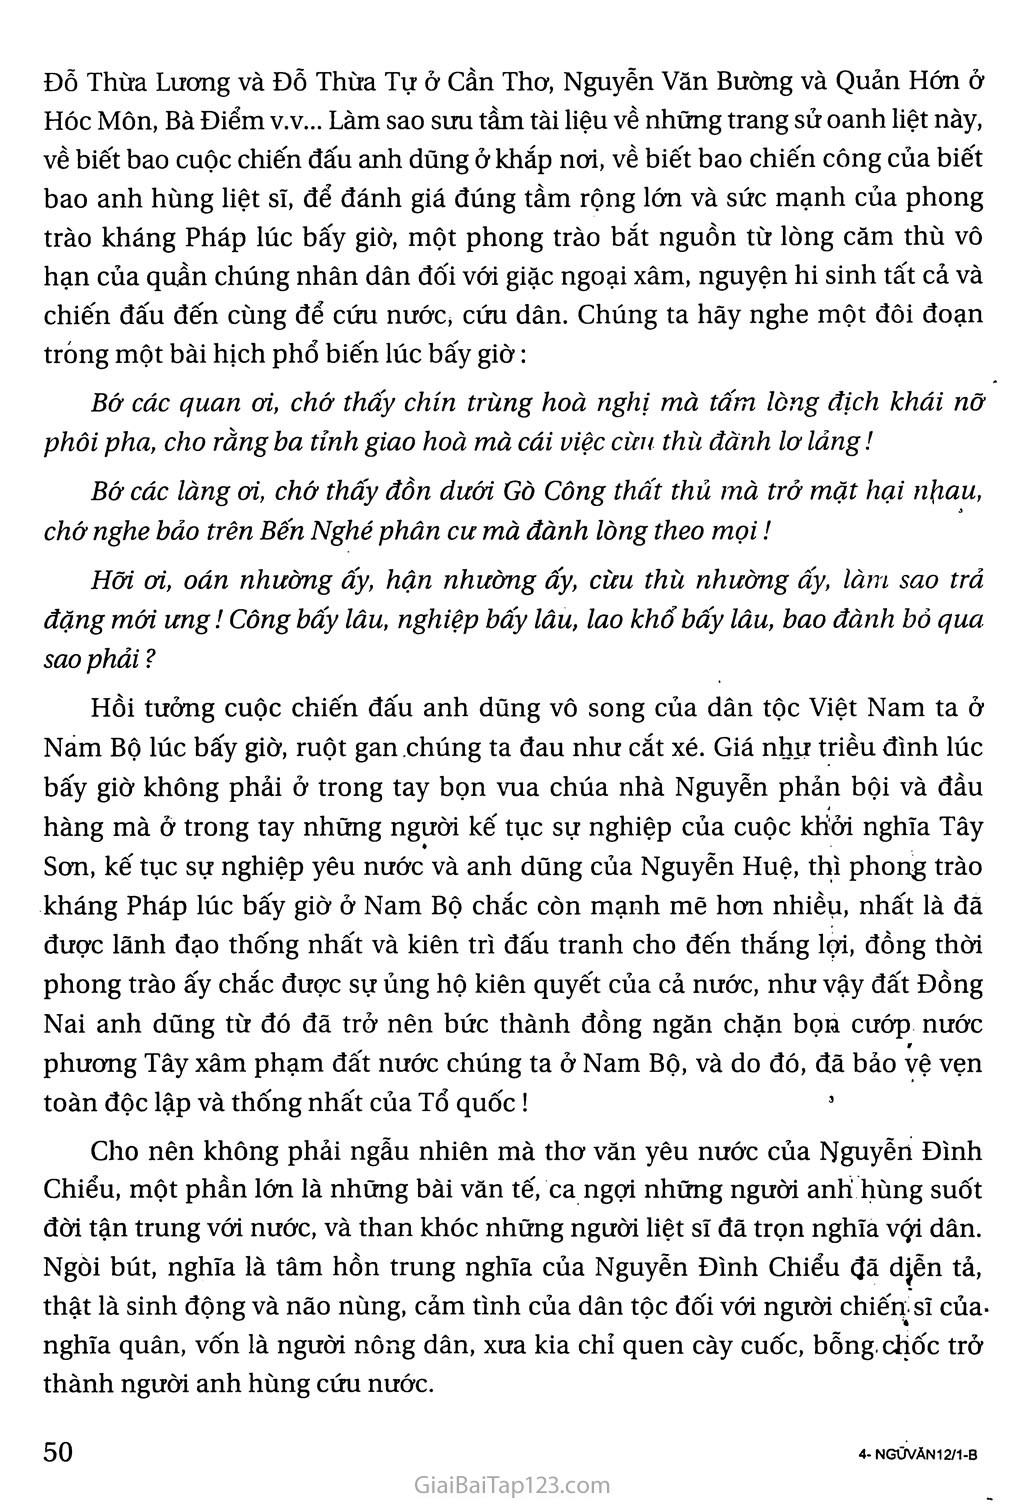 Nguyễn Đình Chiểu, ngôi sao sáng trong văn nghệ của dân tộc trang 4